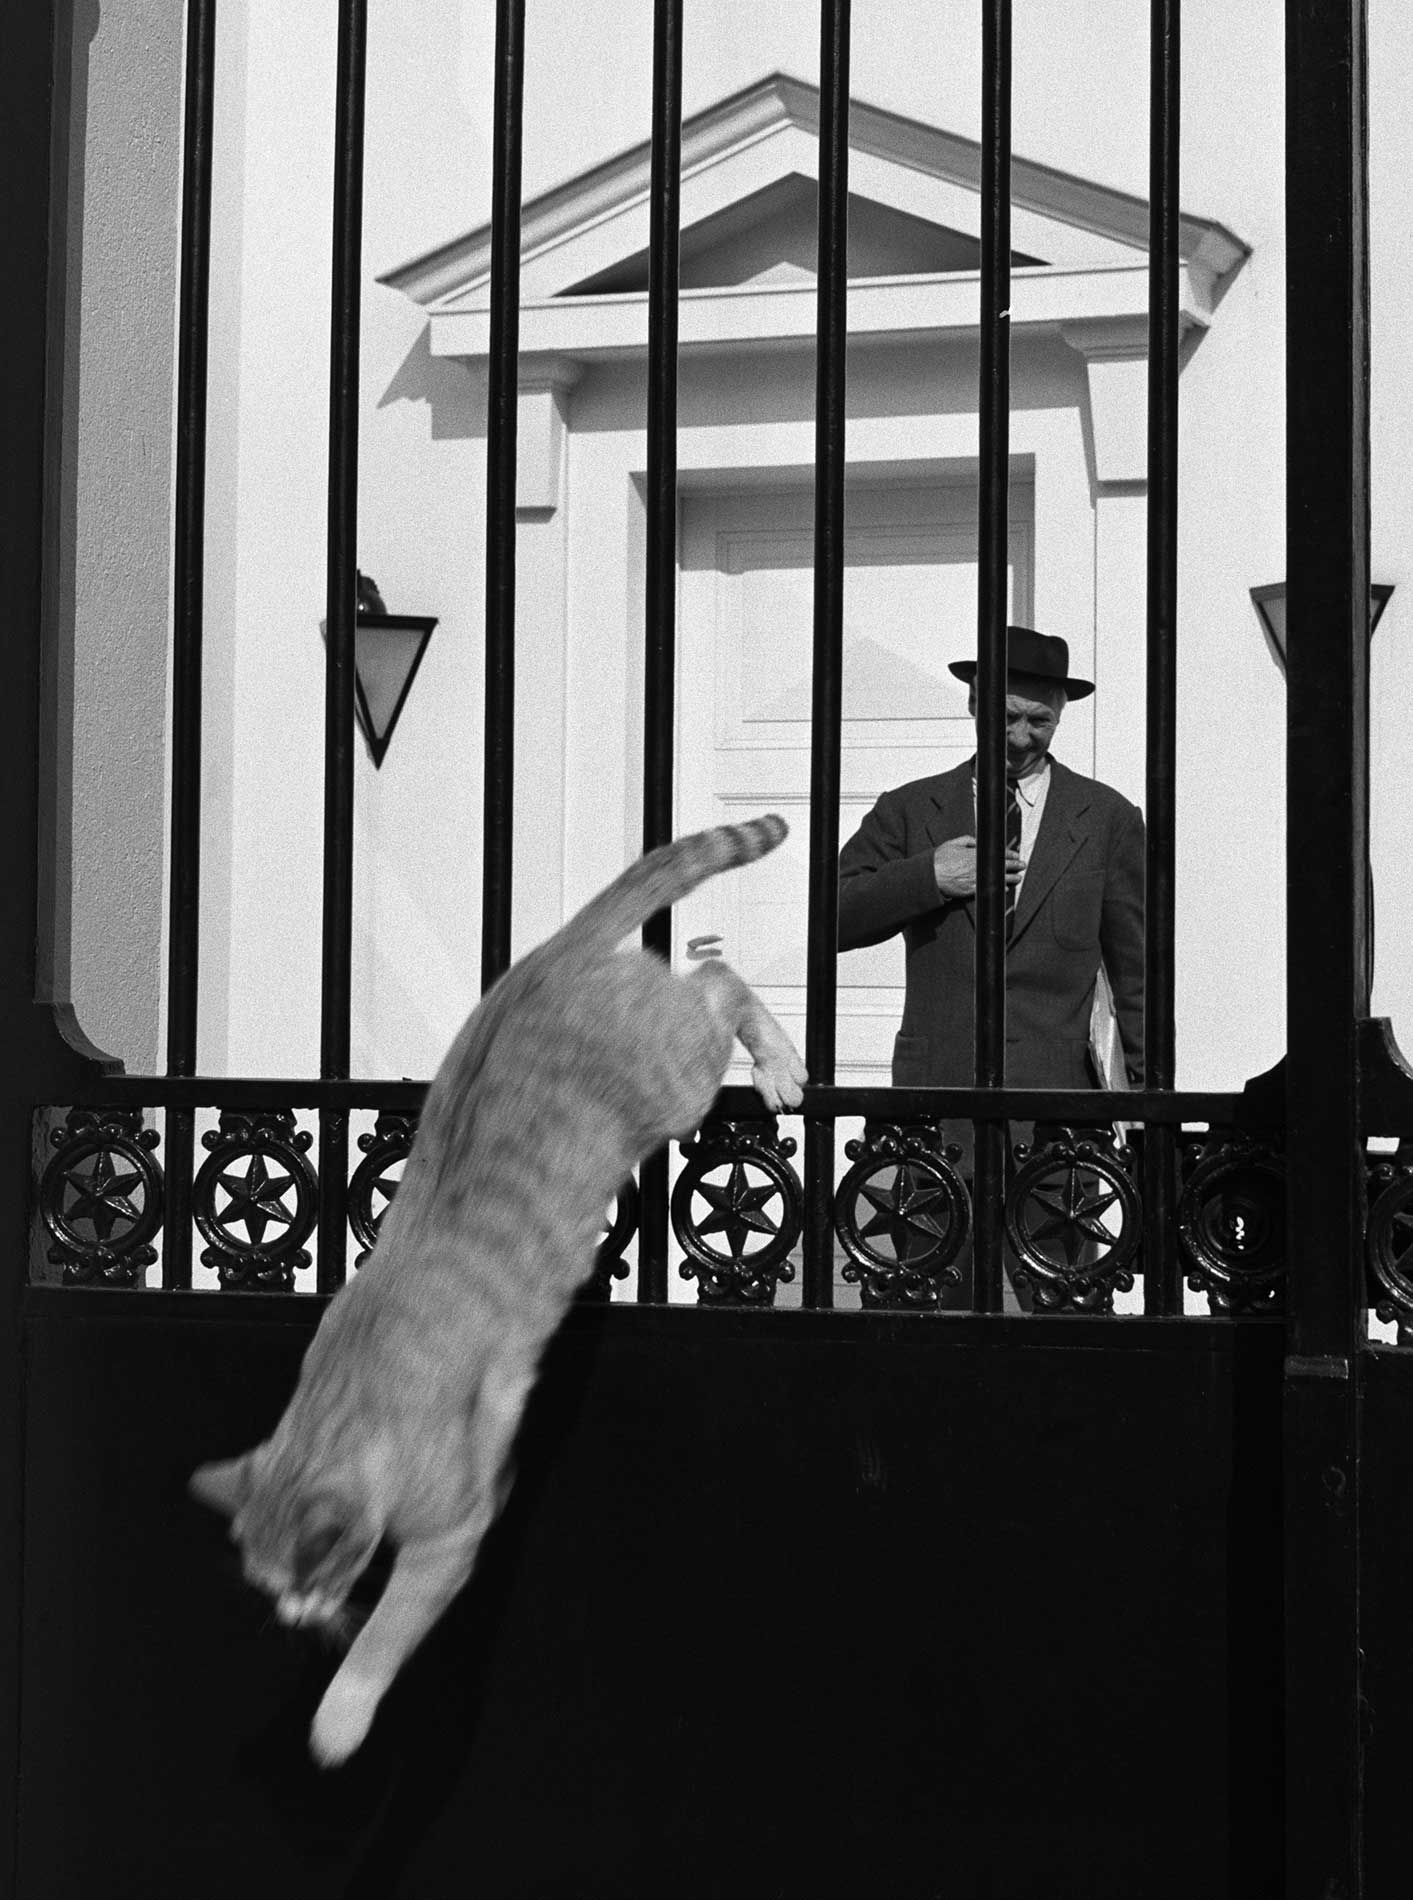 Sabine Weiss "LA POESIA DELL'ISTANTE" uomo con cappello davanti a cancello e gatto che salta